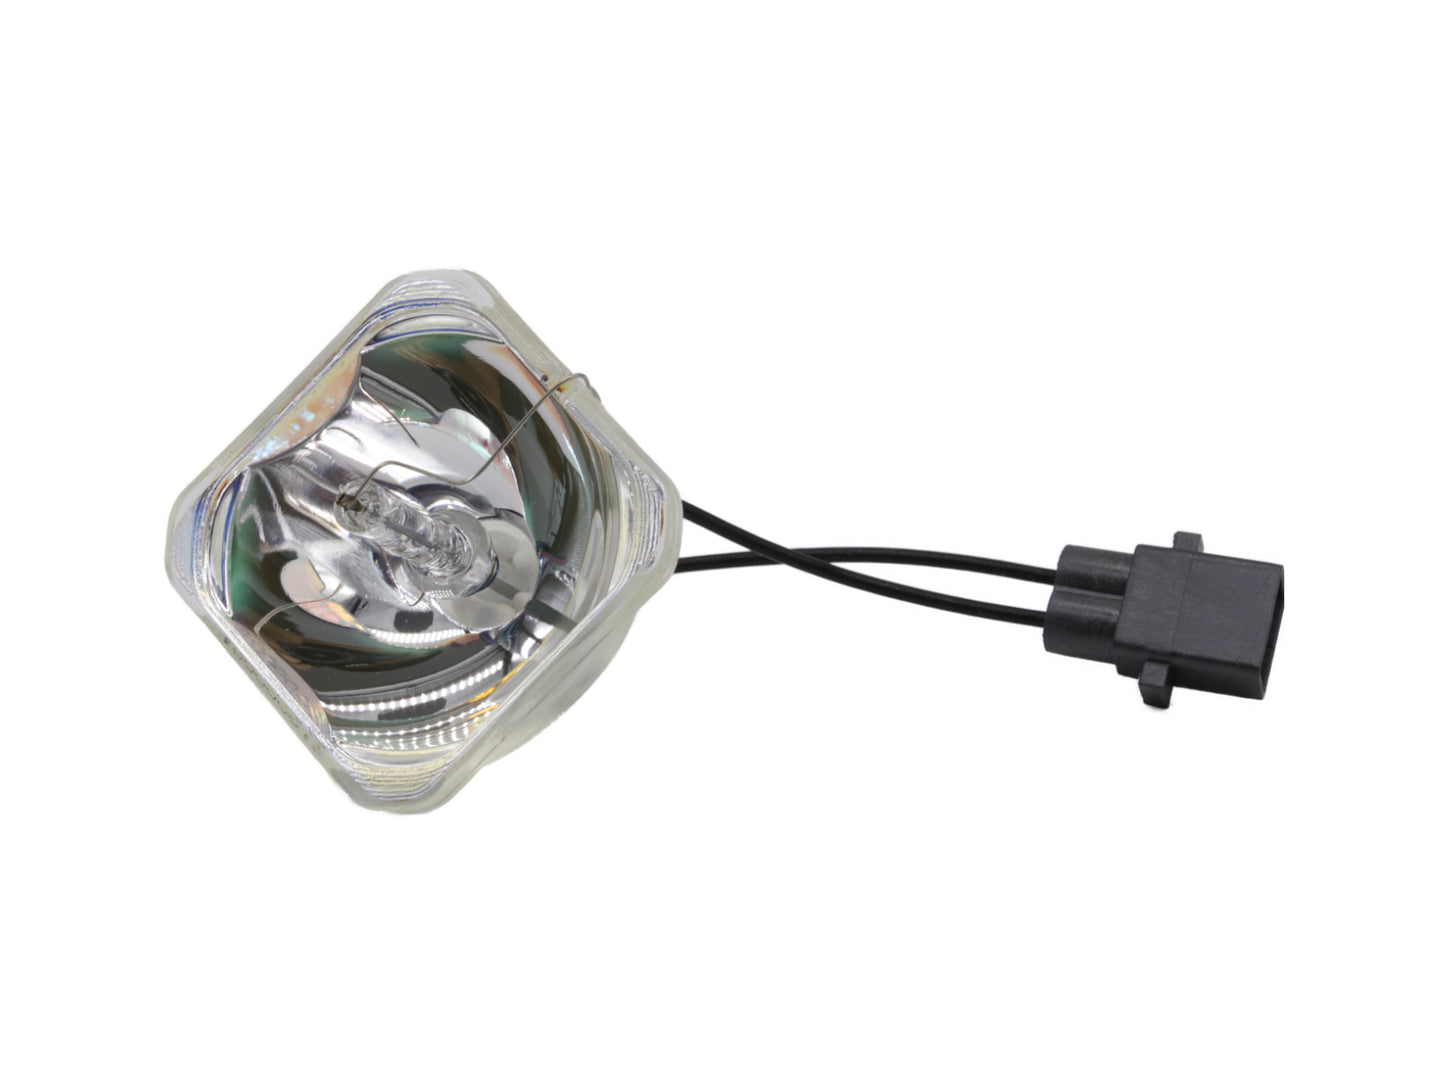 azurano Beamerlampe für EPSON ELPLP61, V13H010L61 Ersatzlampe Projektorlampe - Bild 2